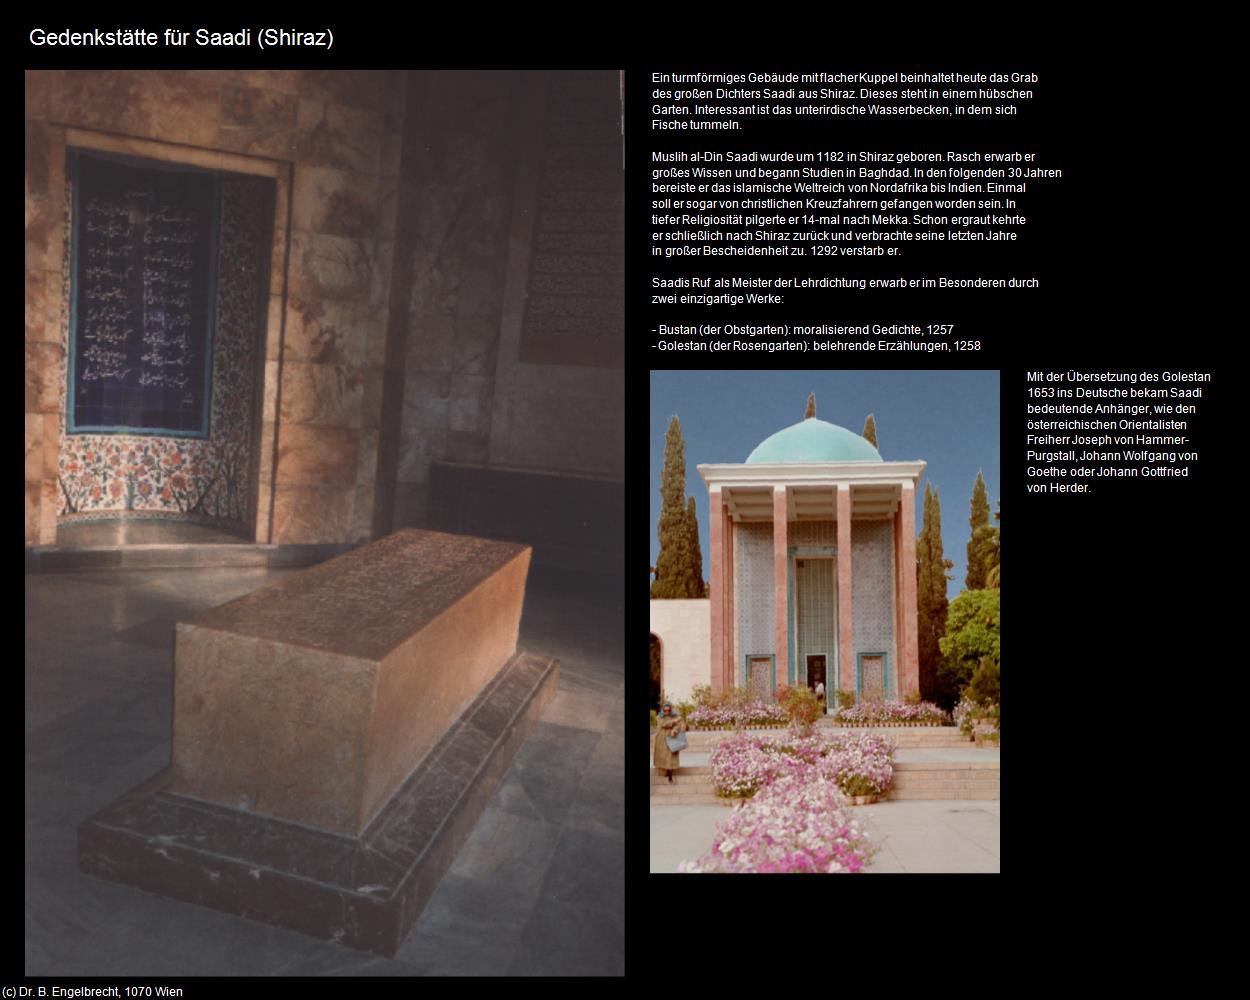 Gedenkstätte für Saadi  (Shiraz) in Iran